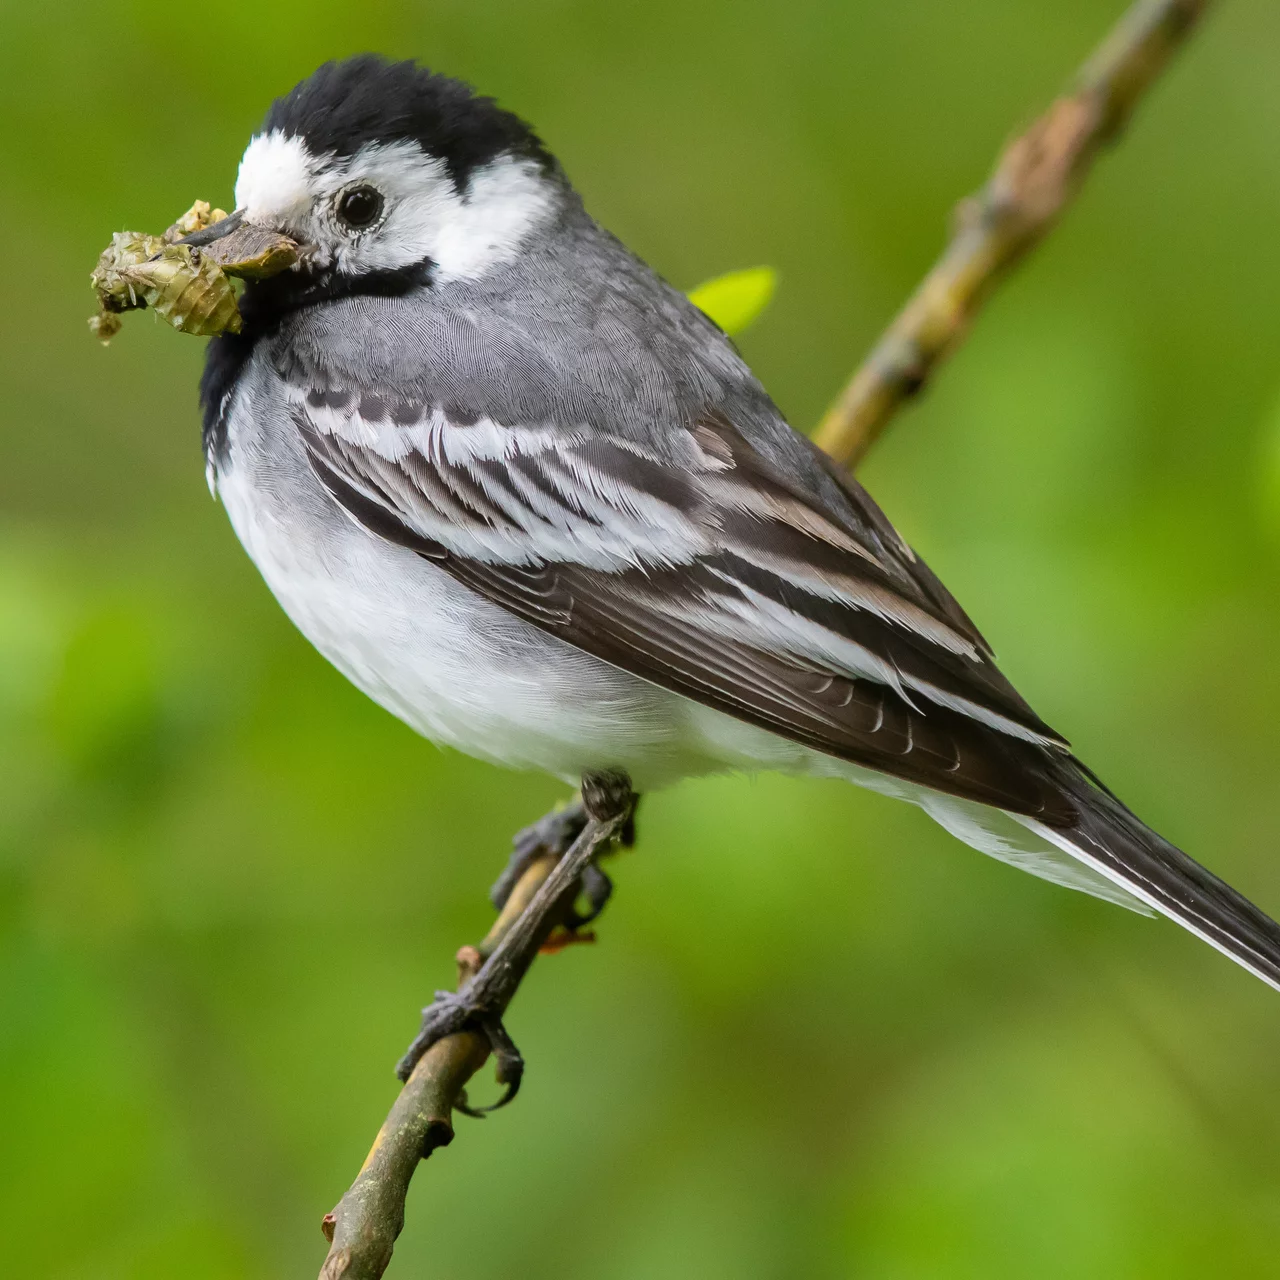 Comment et quand nourrir les oiseaux du jardin? - Hello-birdy